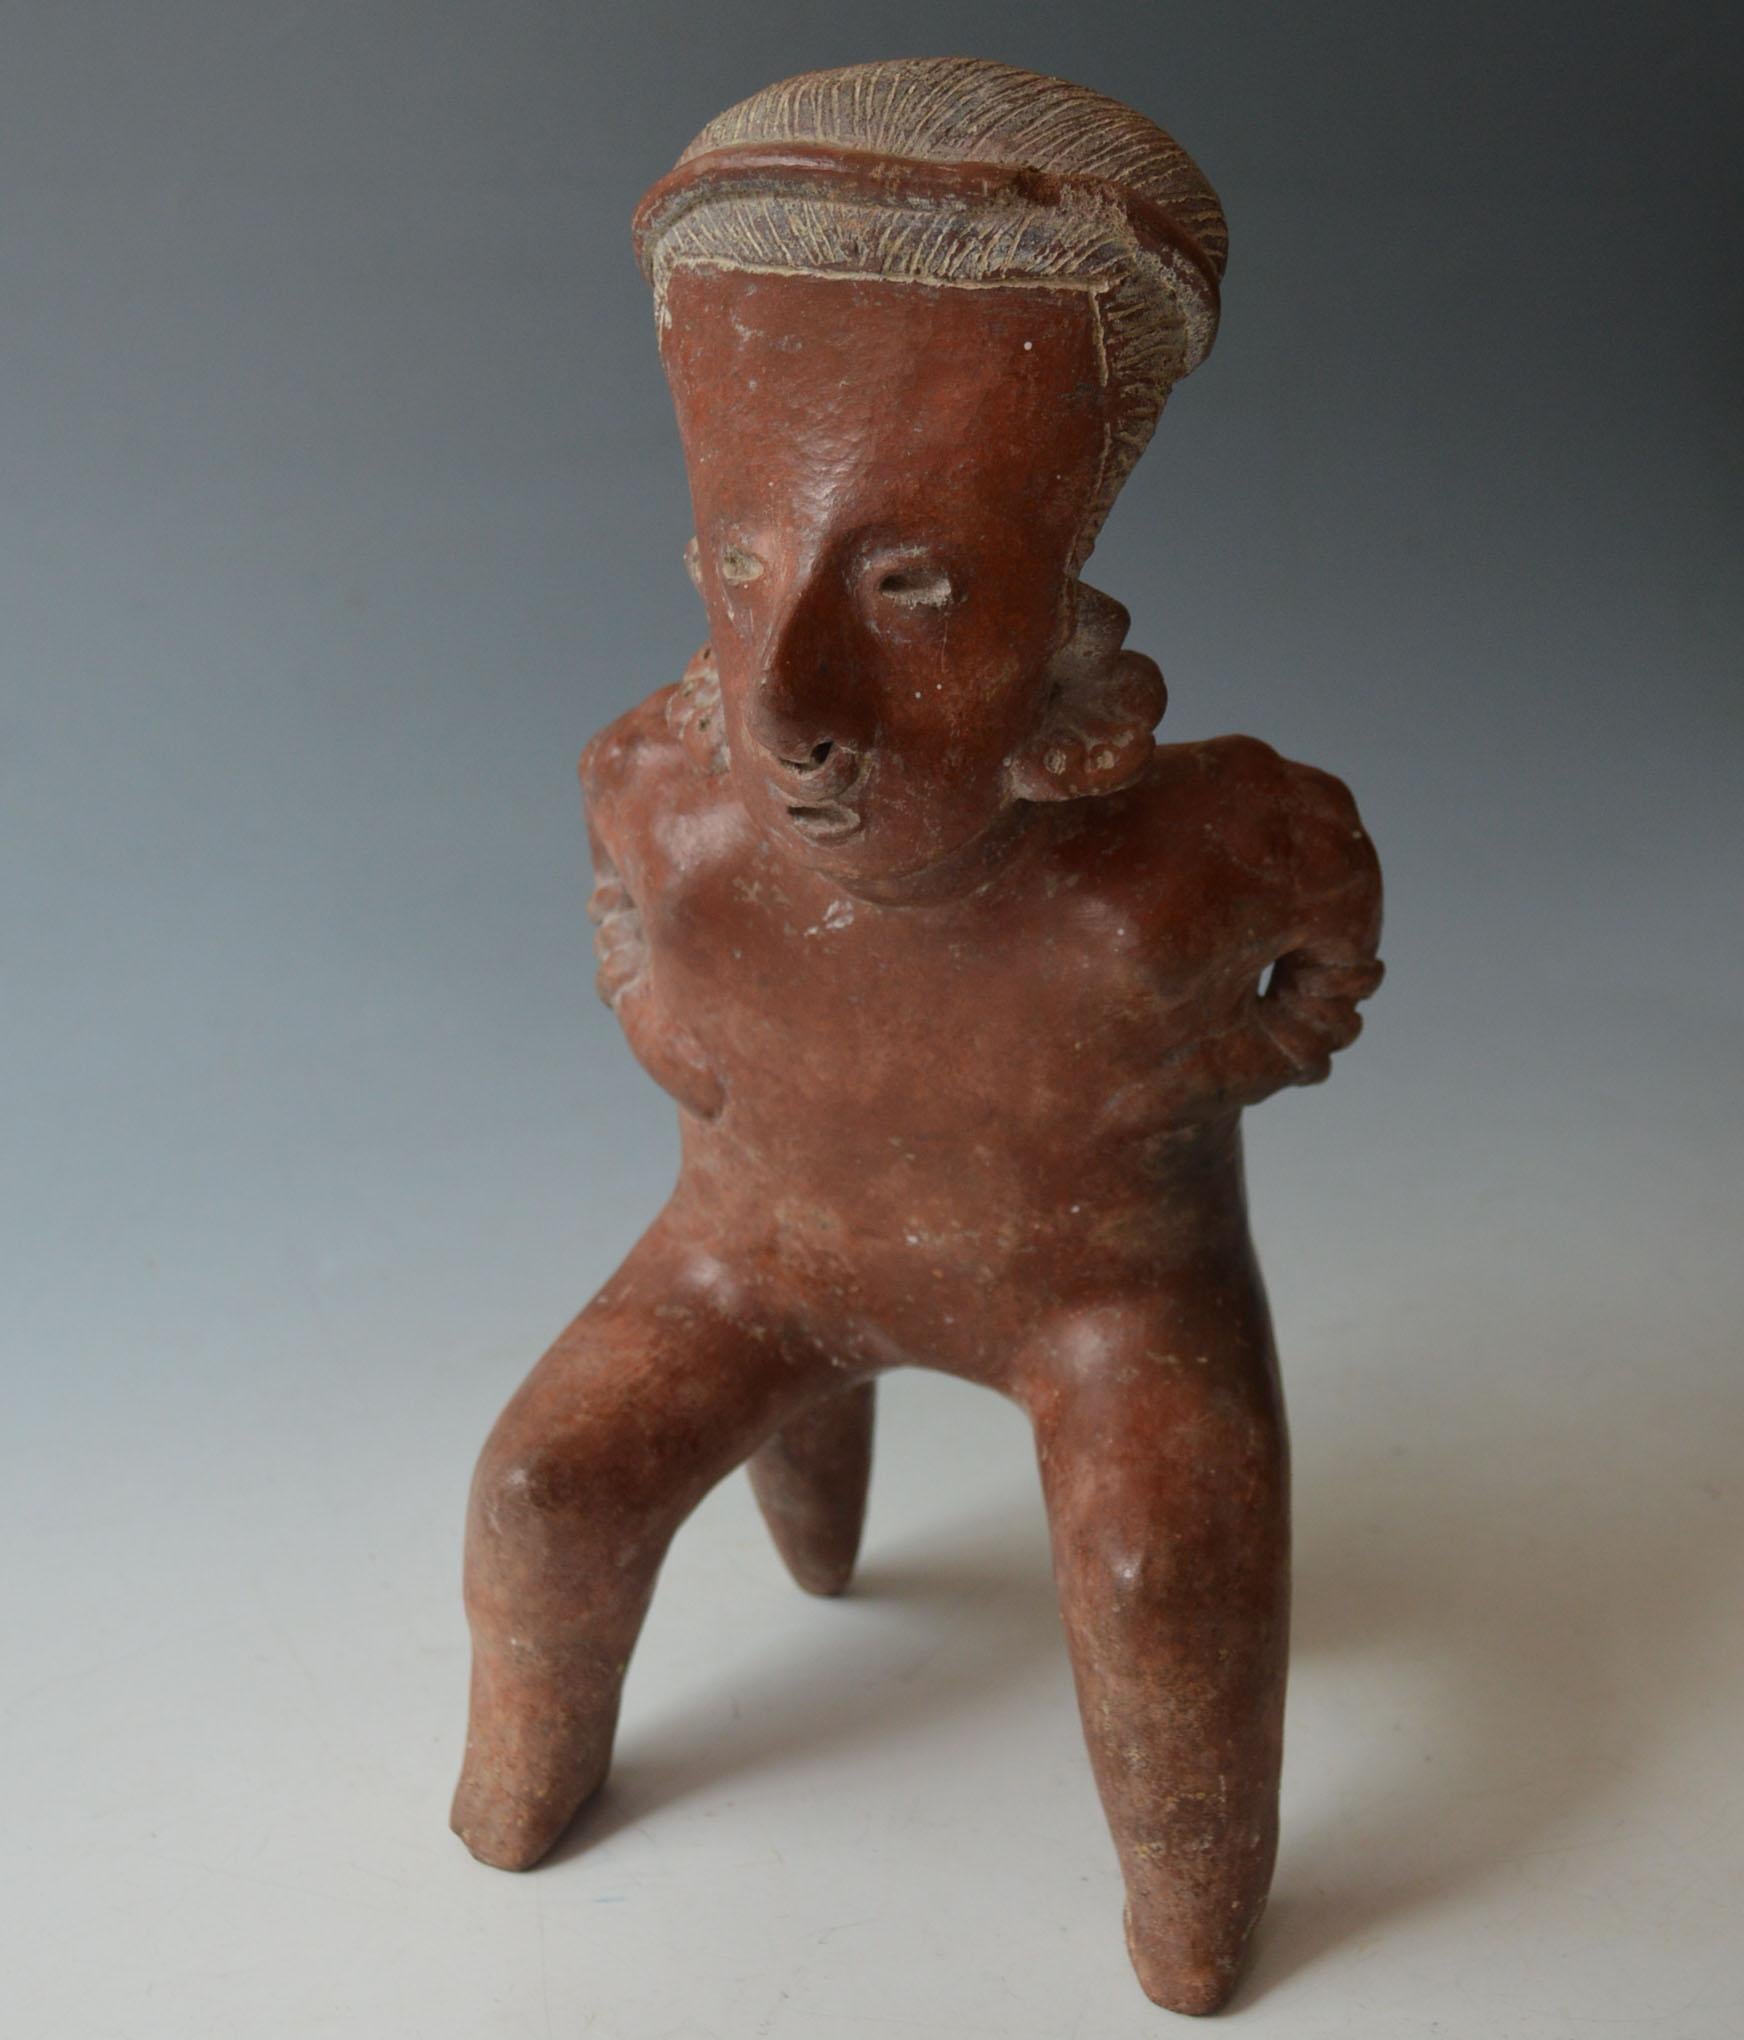 Pre-Columbianische sitzende Figur aus Jalisco
Jalisco West Mexiko  um 100-300 v. Chr. A.I.C,

A  Männliche Töpferfigur mit rotem Schlicker mit länglichem Kopf und linear gezeichnetem Haar, die Ohr- und Nasenschmuck trägt,  der schlanke Körper  fein